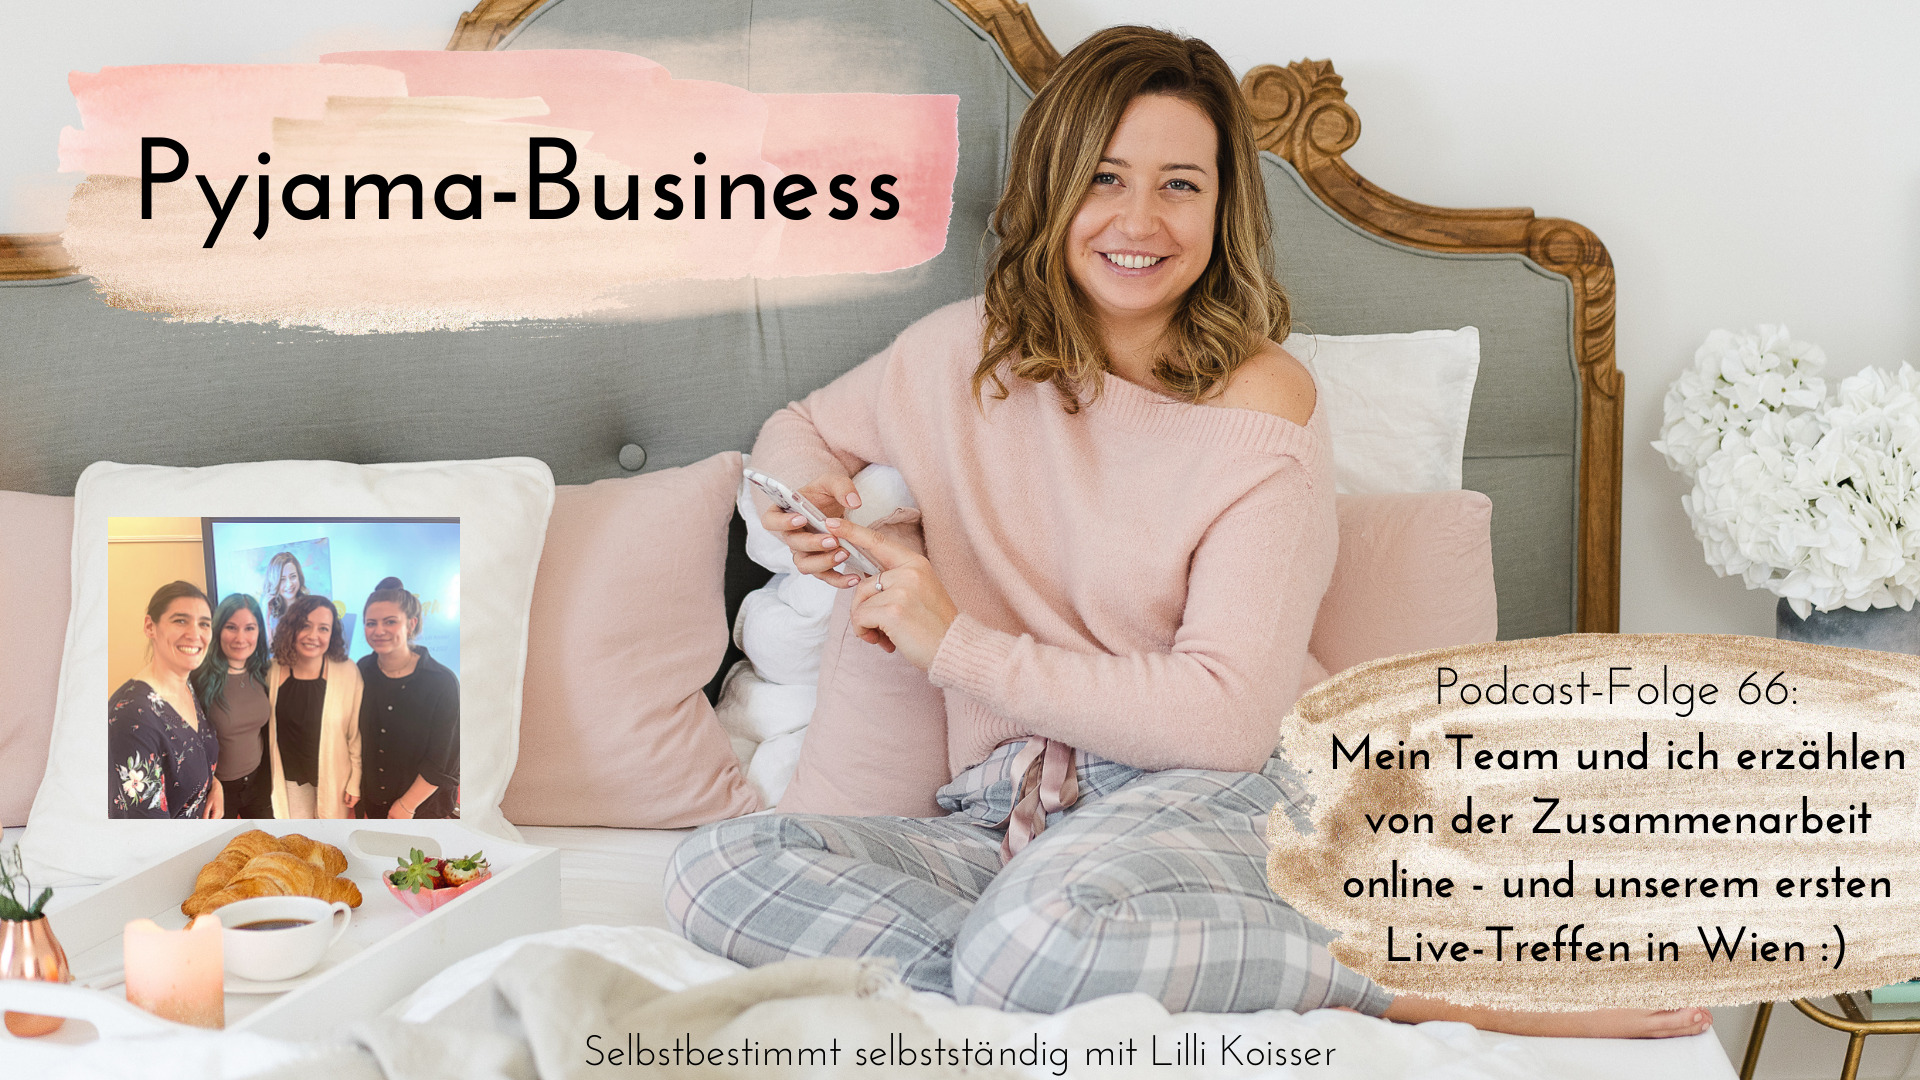 Pyjama-Business Podcast Folge 66: Mein Team und ich erzählen von der Zusammenarbeit online - und unserem ersten Live-Treffen in Wien